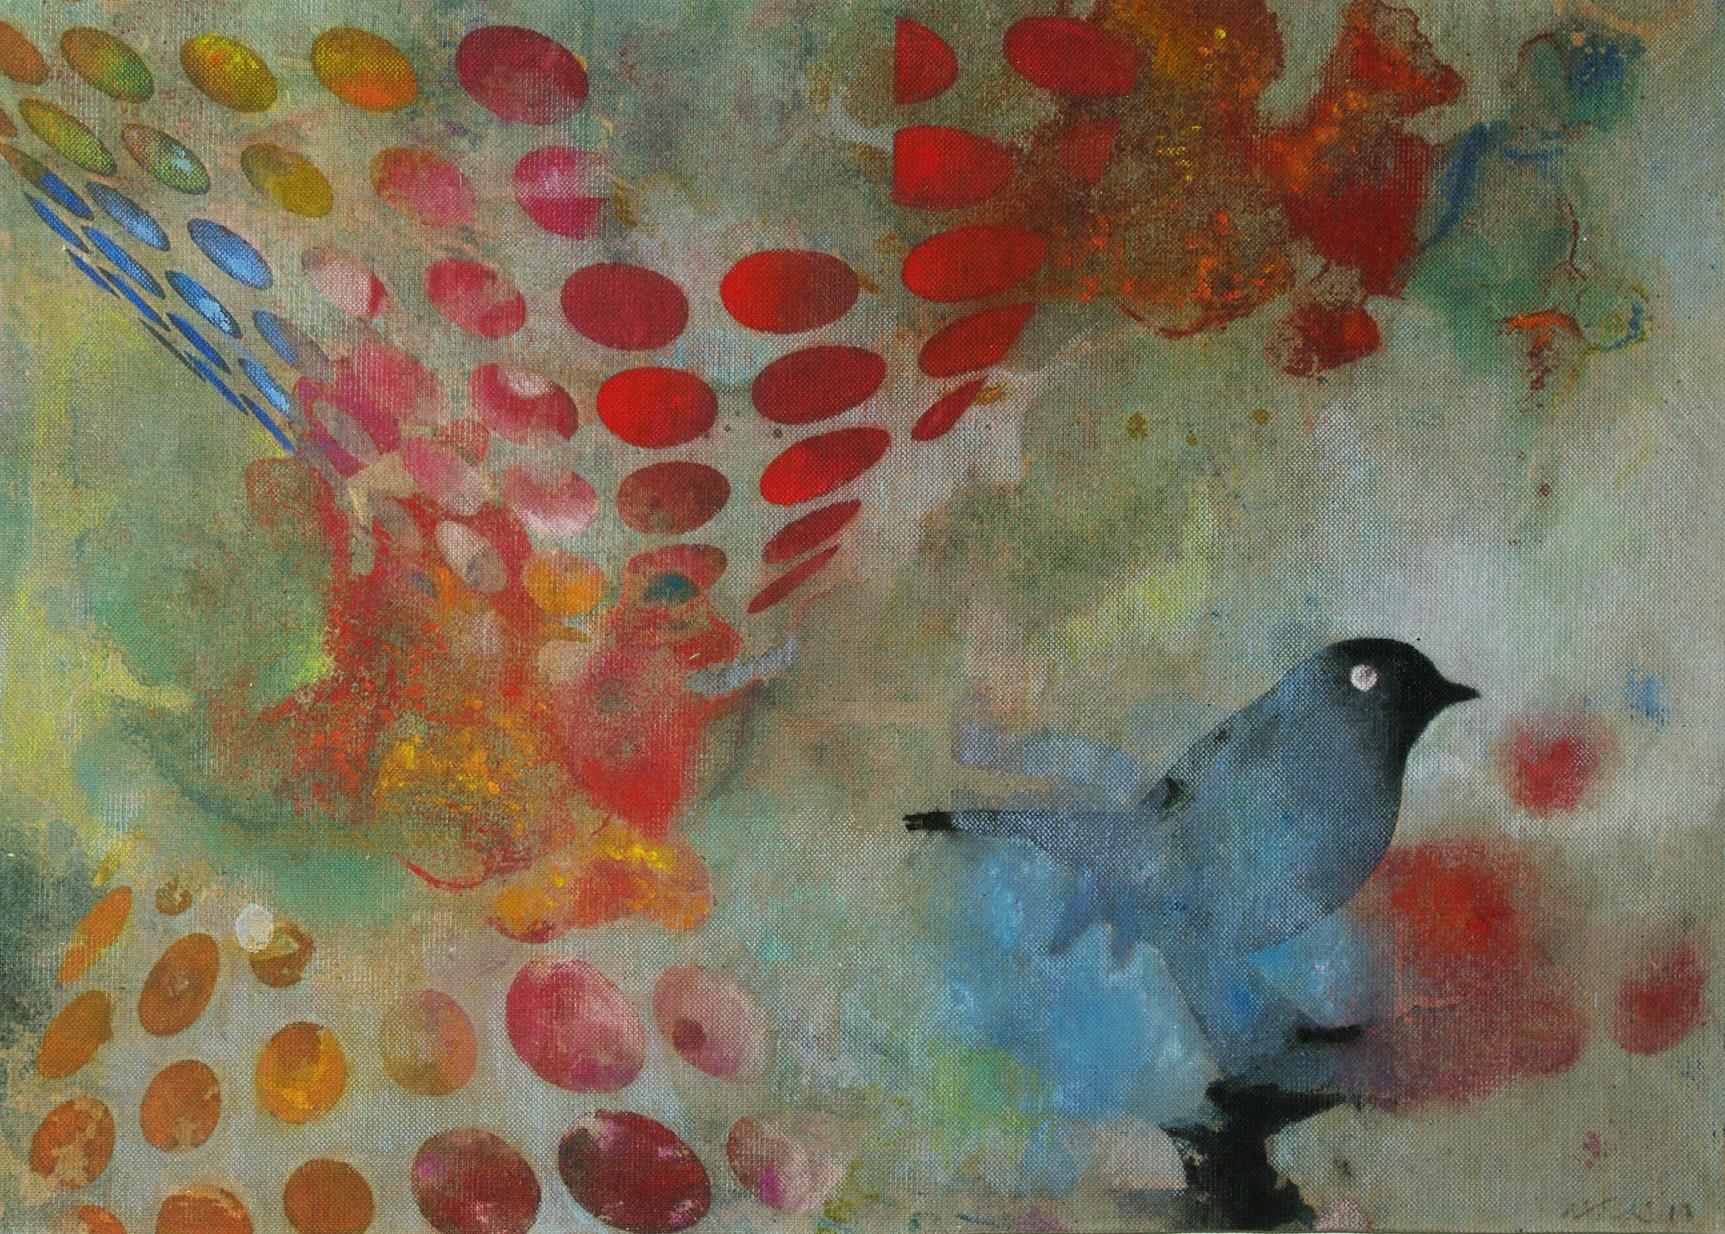 Vögel 024 – Zeitgenössisch, abstrakt, expressionistisch, modern, Straßenkunst, Surrealistisch